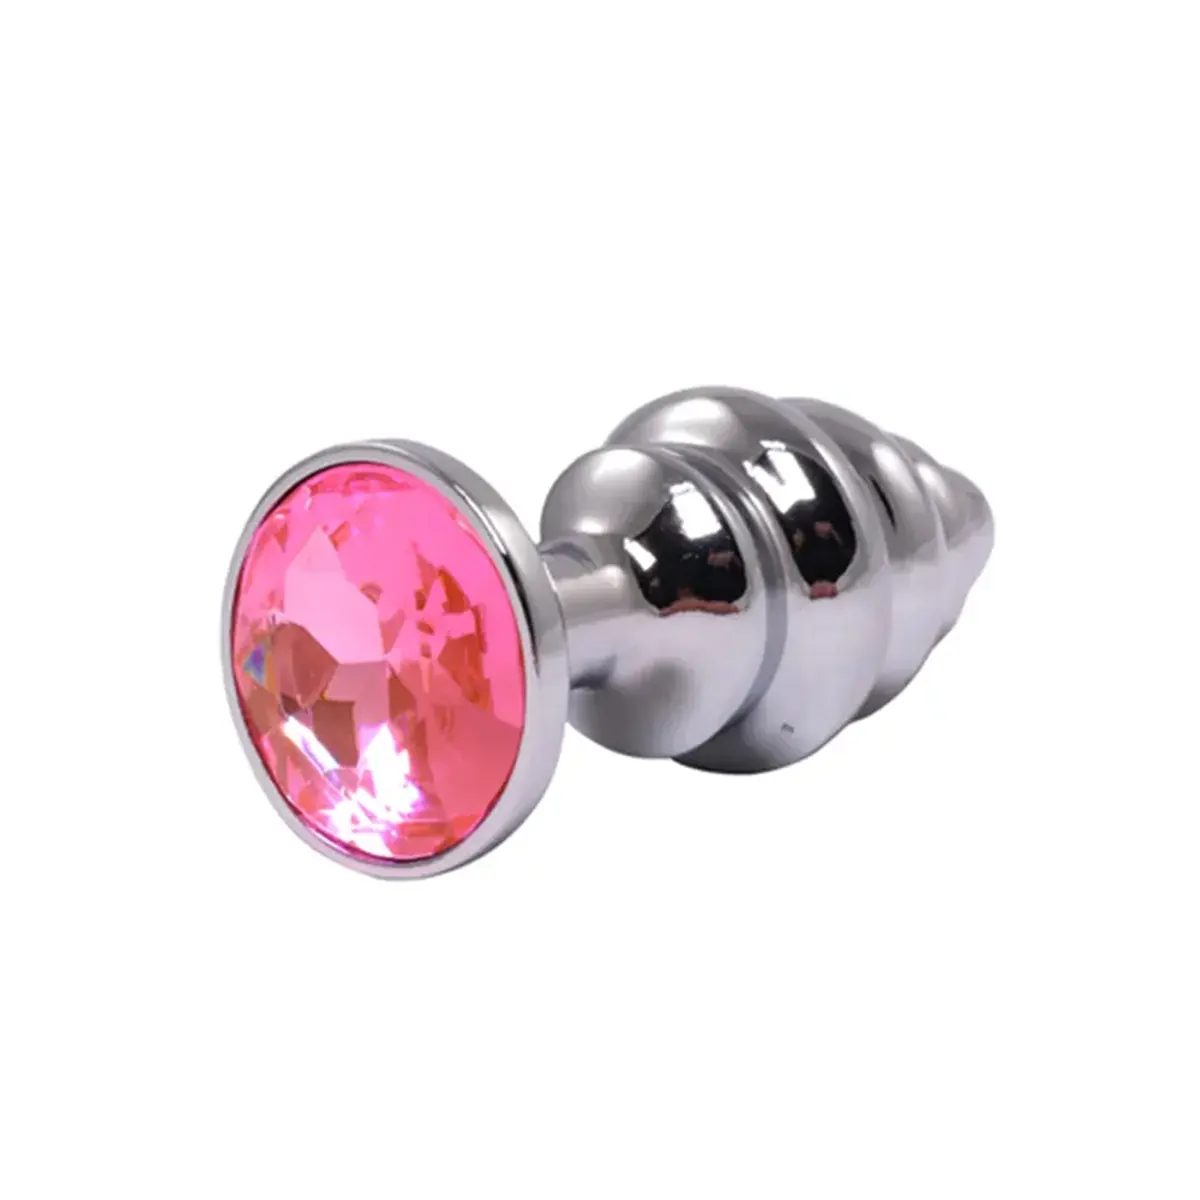 Srednji rebrasti metalni analni dildo sa rozim dijamantom